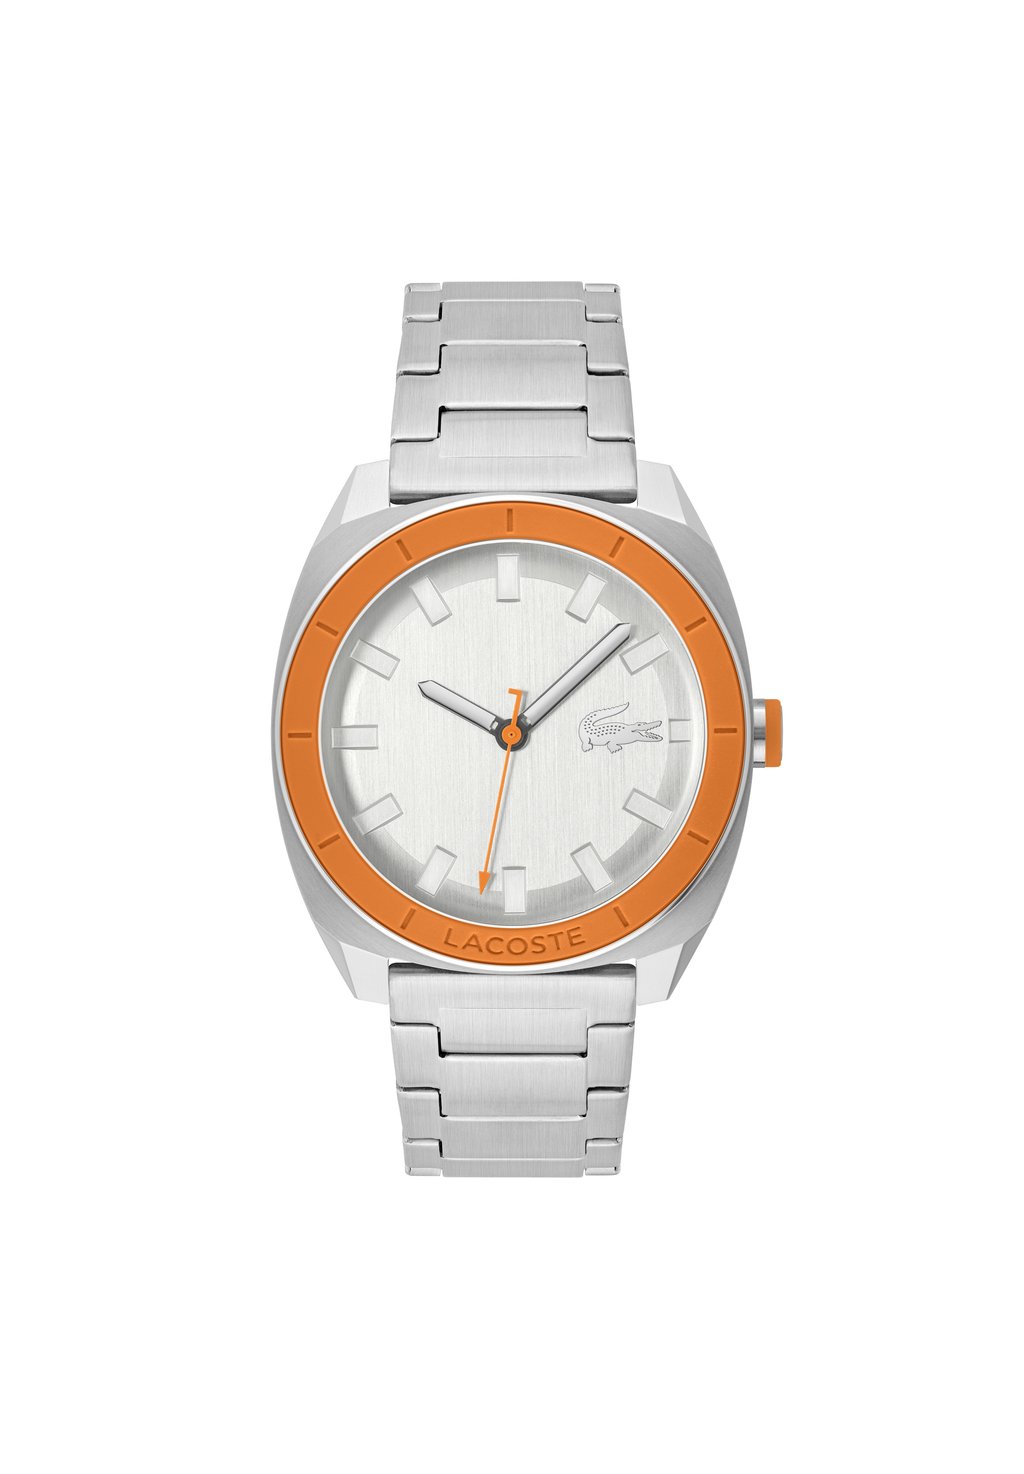 Часы Sprint Lacoste, цвет silber orange silber silber silber j improvement